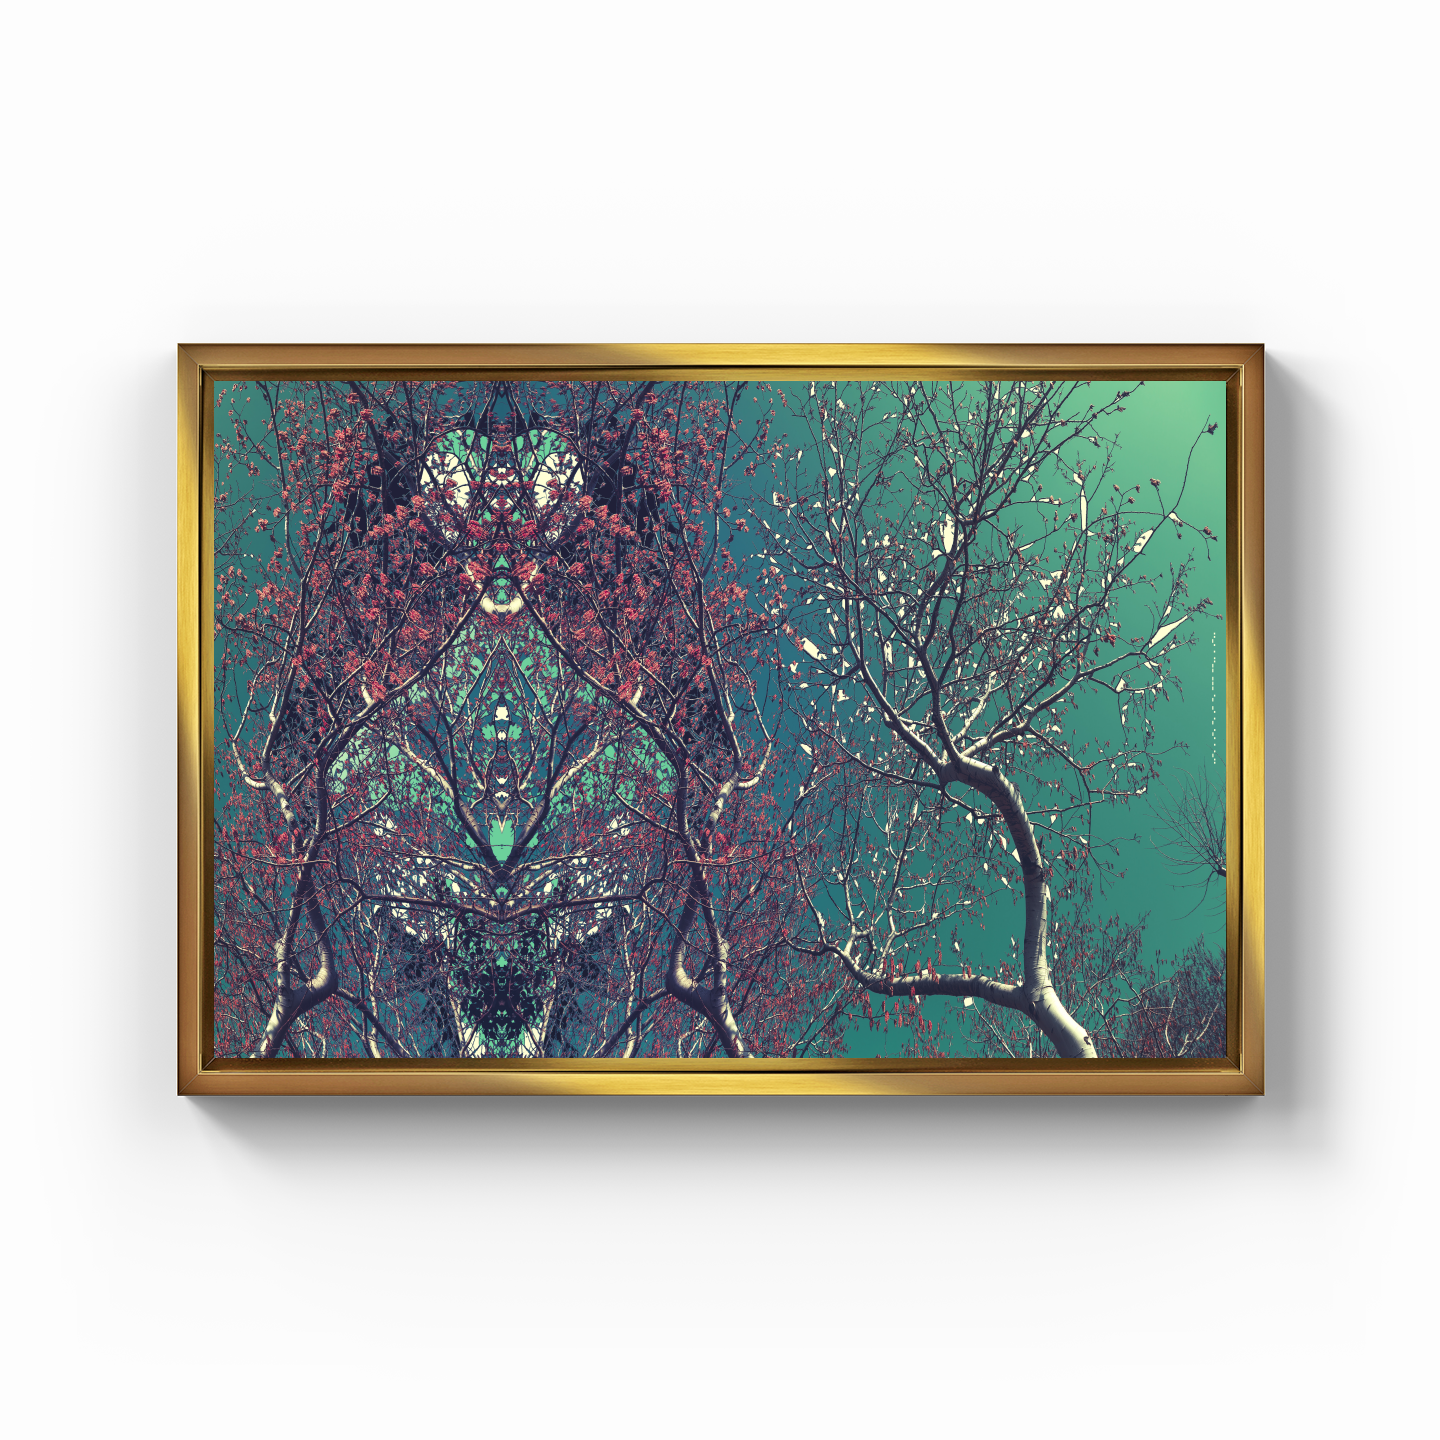 Simetri Ağaç Dal Orman Ekspresyonist Abstrakt Manzara No 19 - Kanvas Tablo